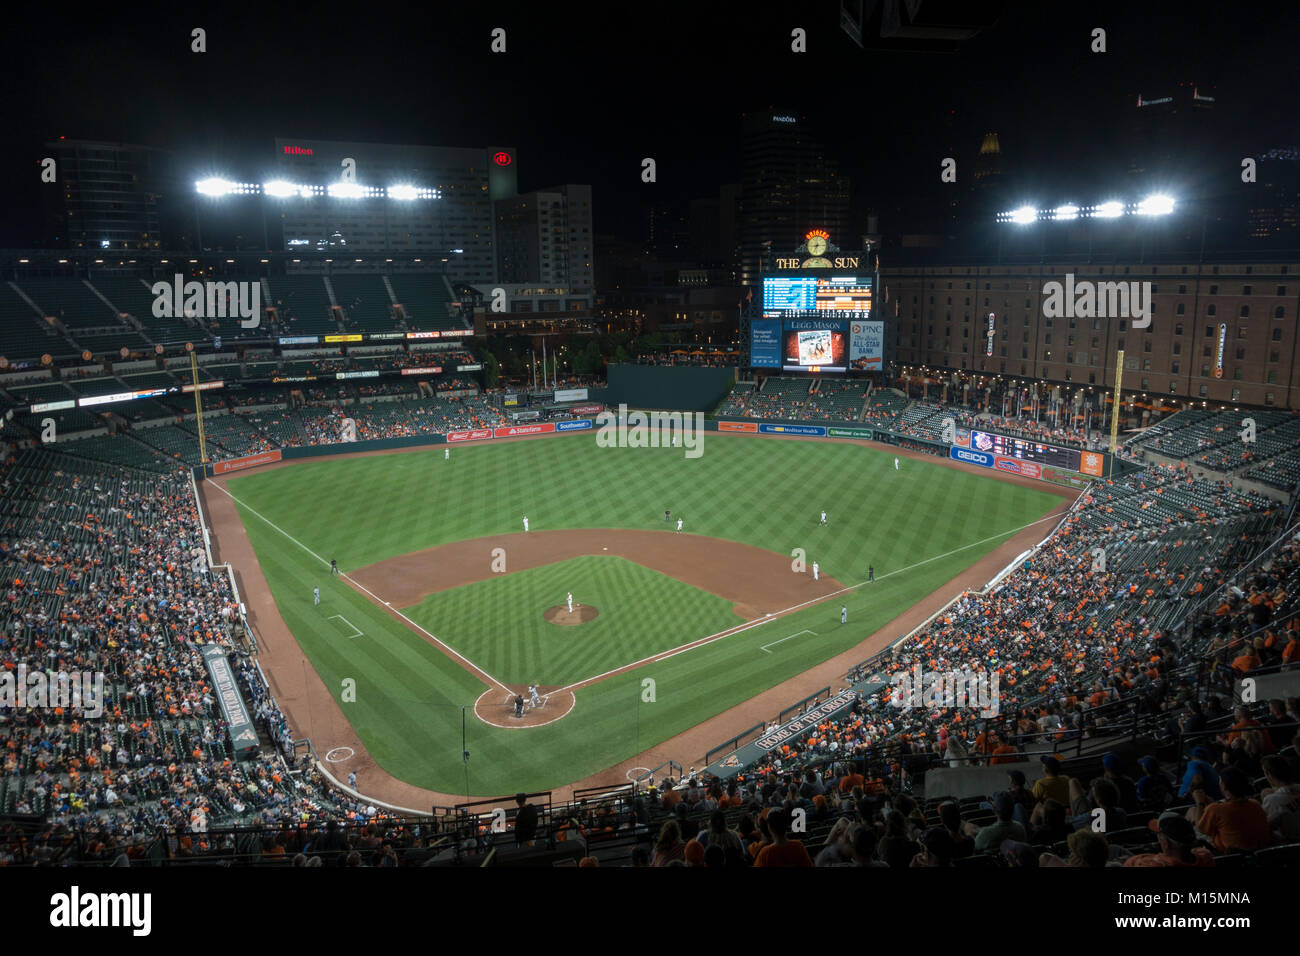 Nacht von Oriole Park at Camden Yards, die Heimat der Baltimore Orioles Major League Baseball Team in Baltimore, Maryland, USA. Stockfoto